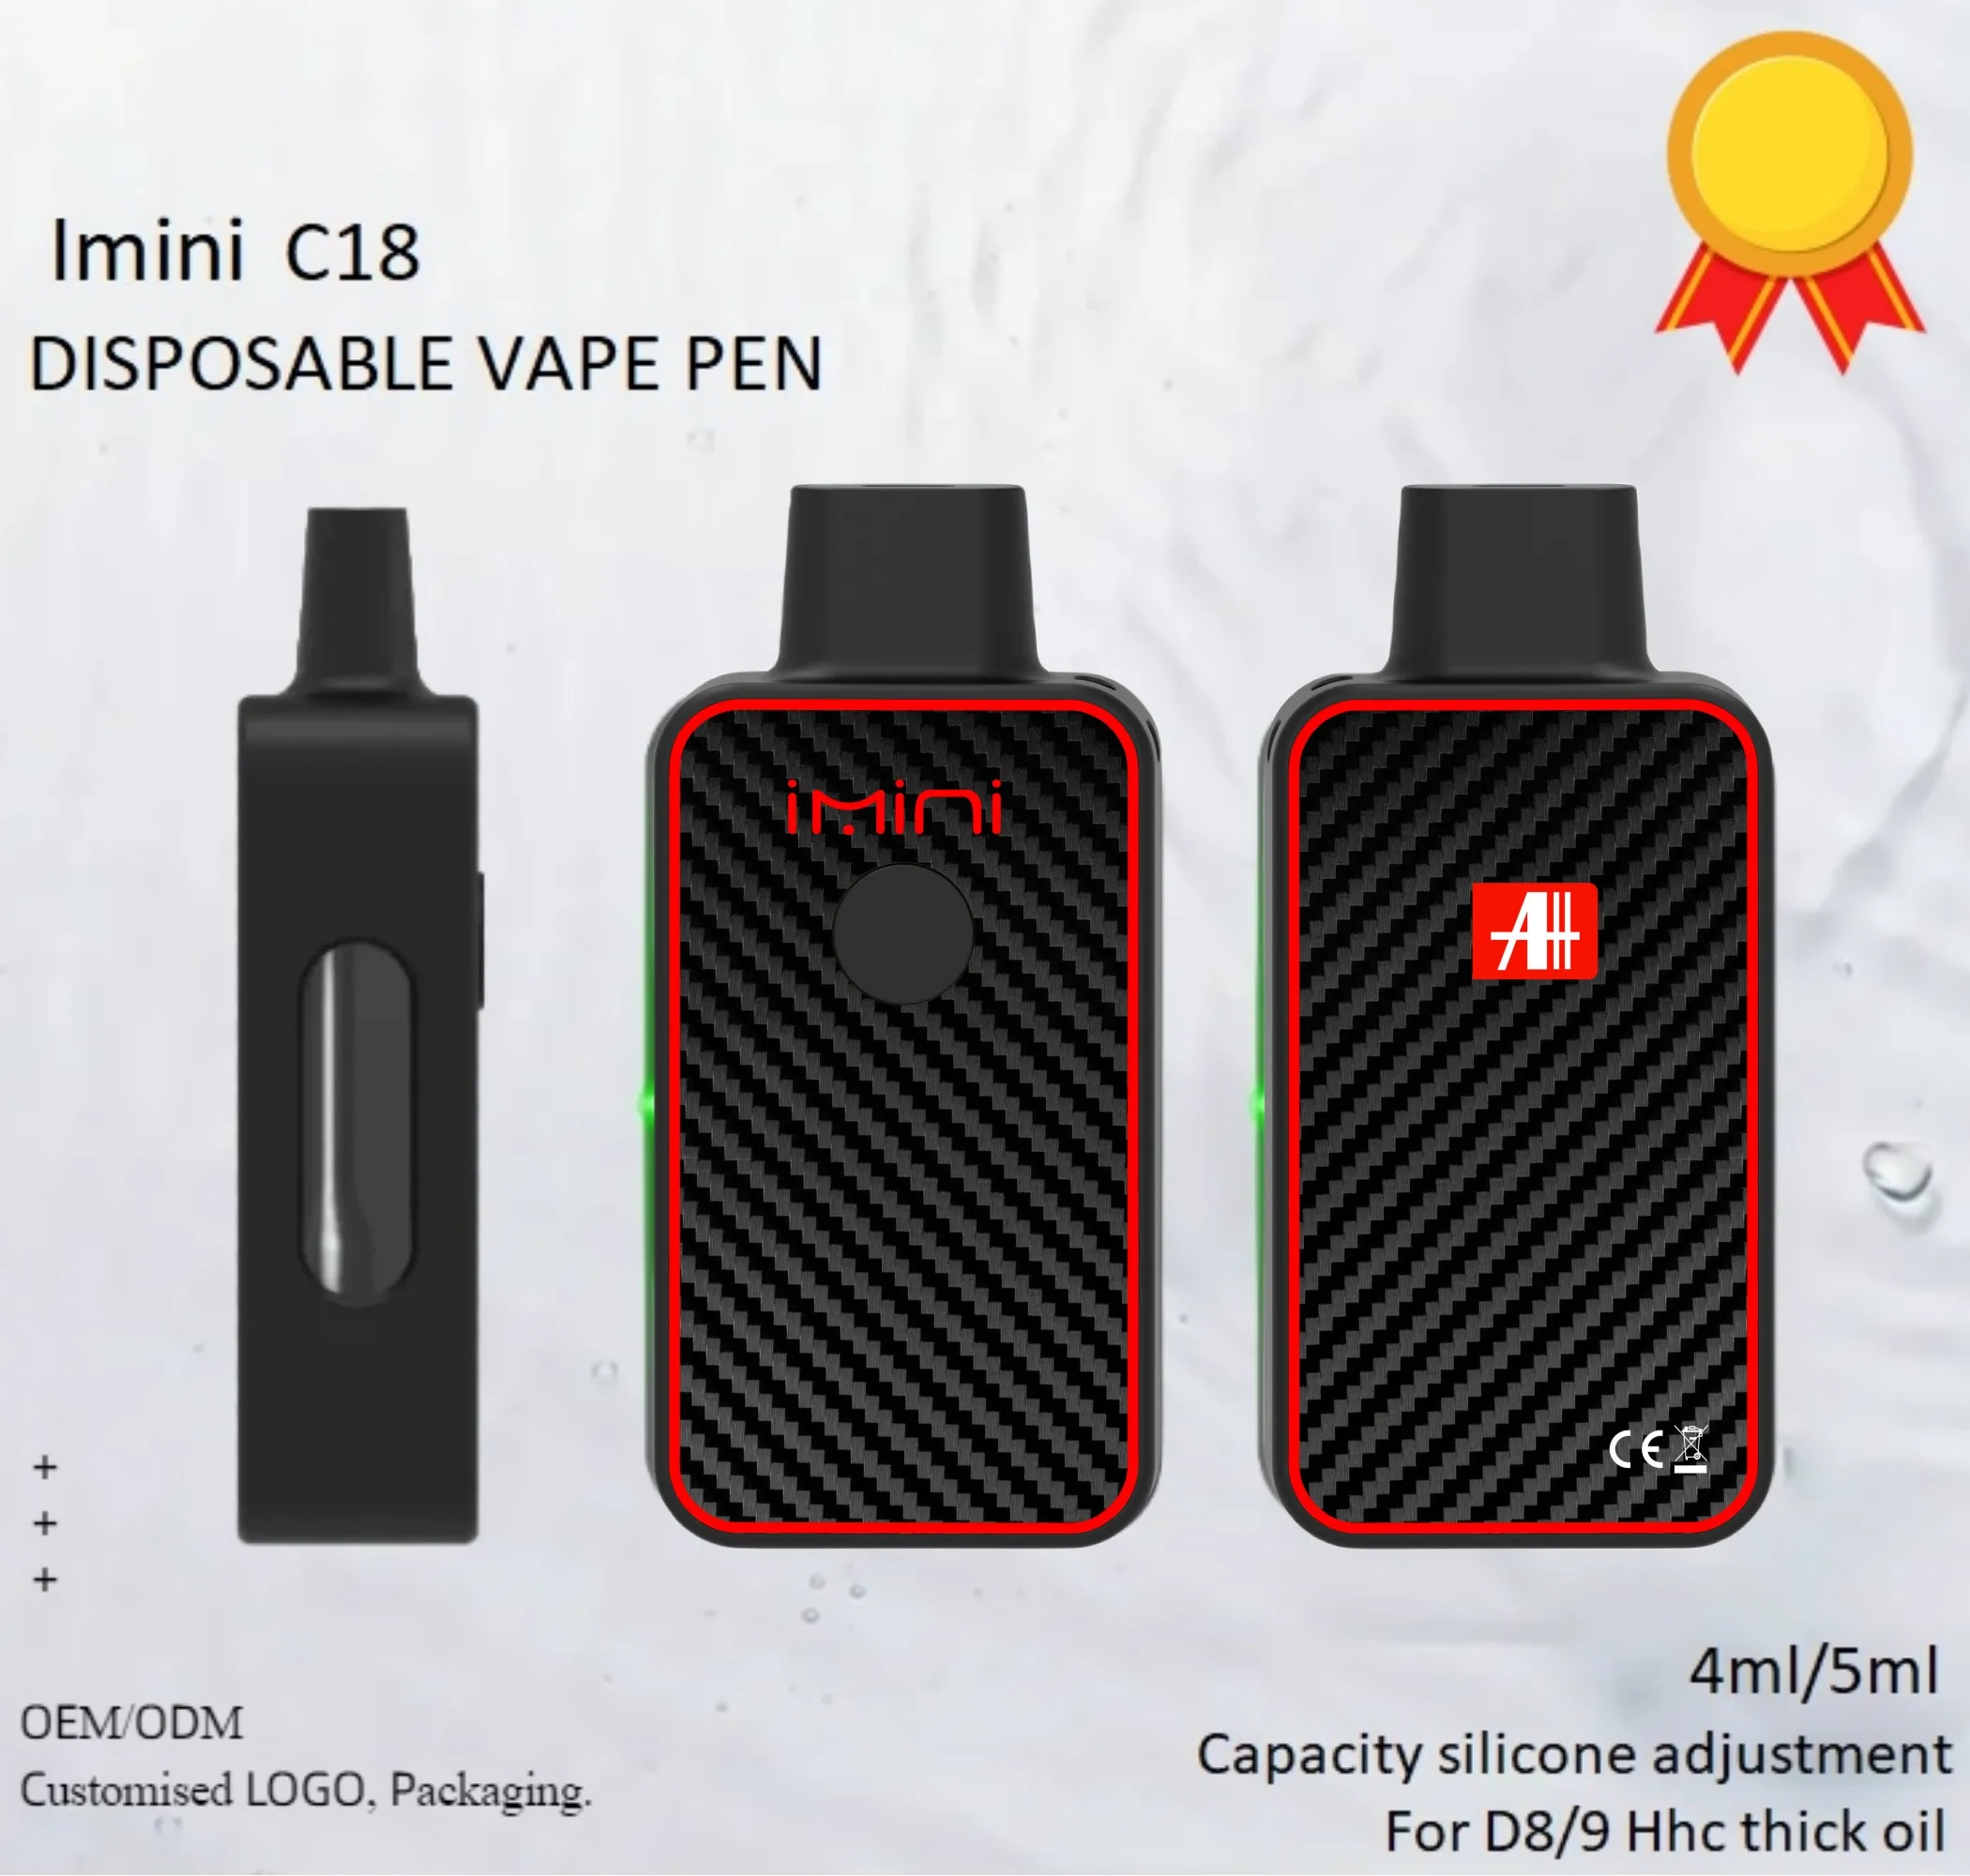 Top 1 Authentic Imini C18 Disposable Vape Empty Oi lBox USB Recharge Device 4.0ml 5.0ml Black Vaporizer 380mAh Ceramic Coil Adjustable Voltage 2.7V D8 D9 D10 Empty Device